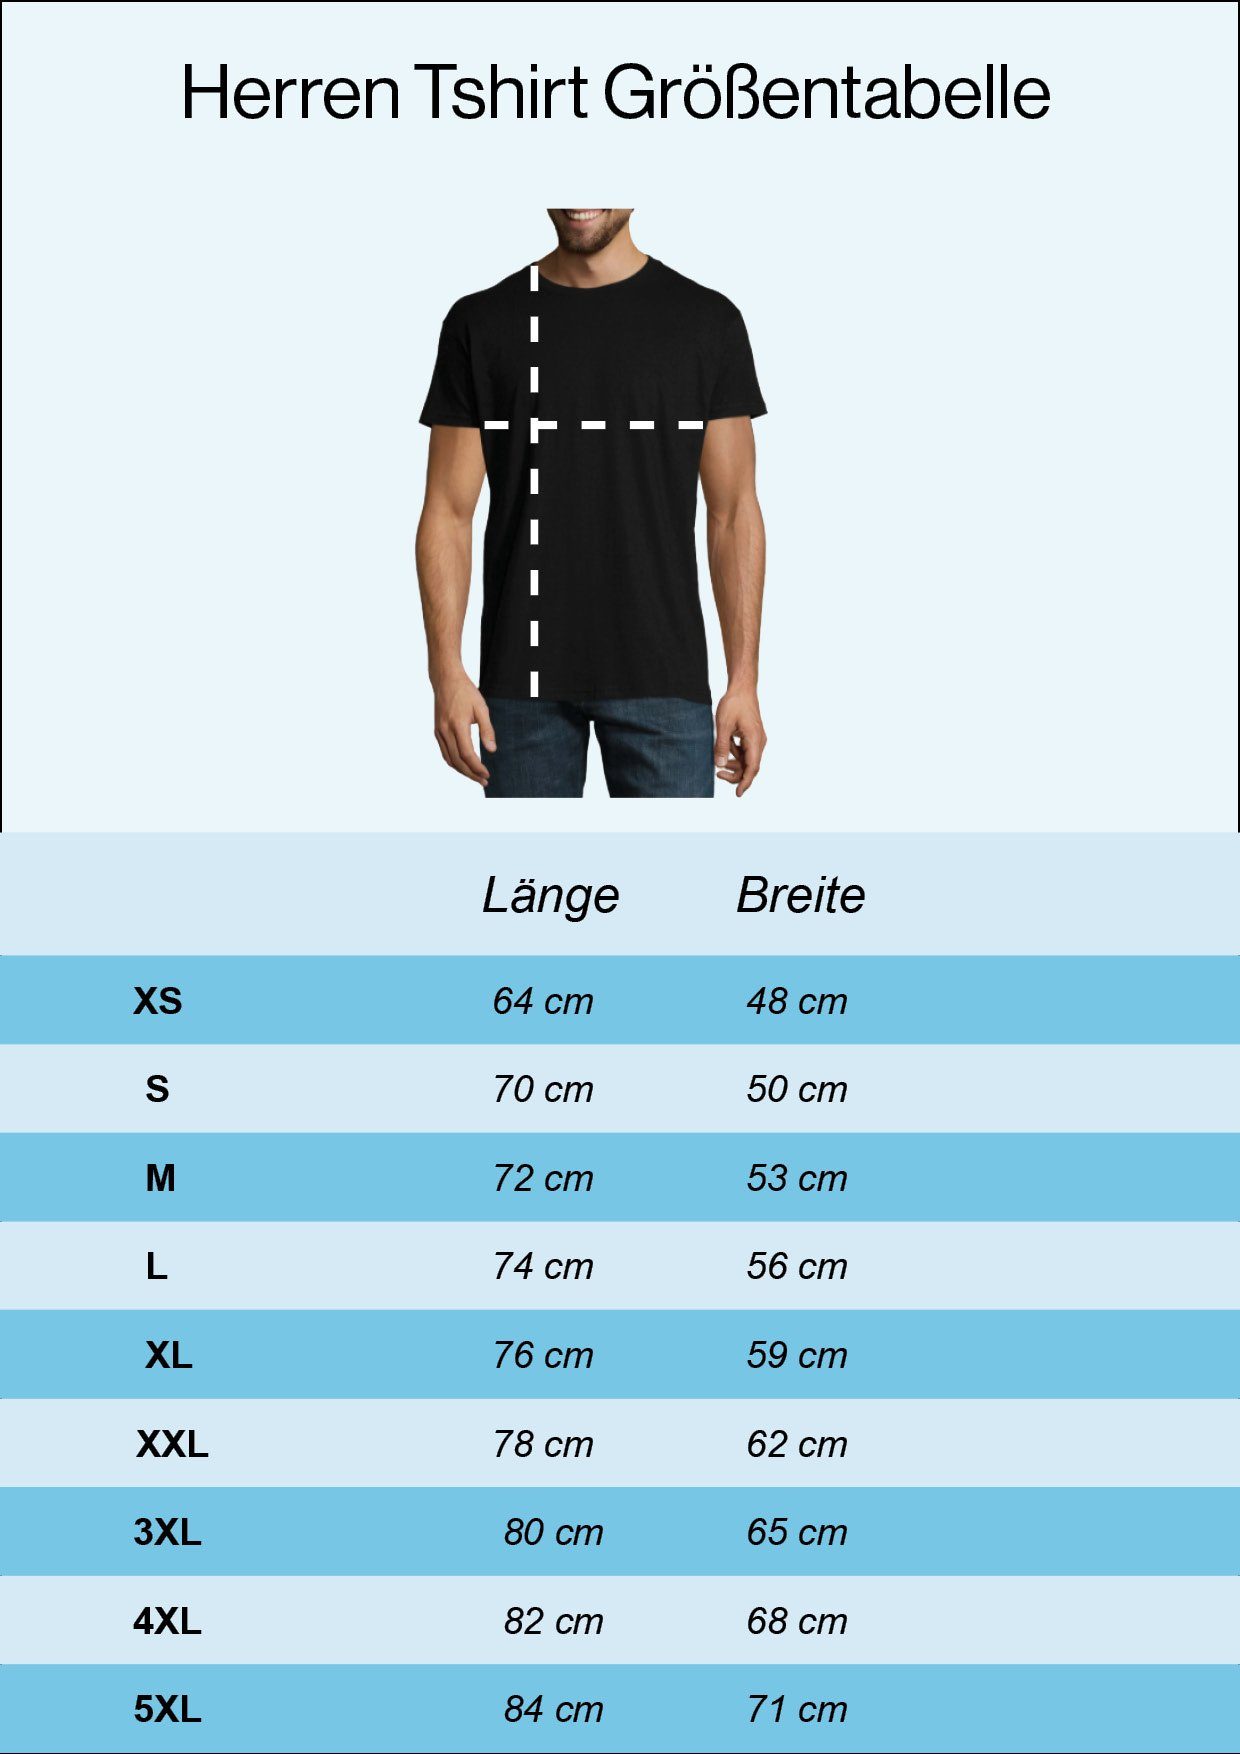 Youth Designz Deutschland Herren trendigem Navy Frontprint T-Shirt T-Shirt mit Herz